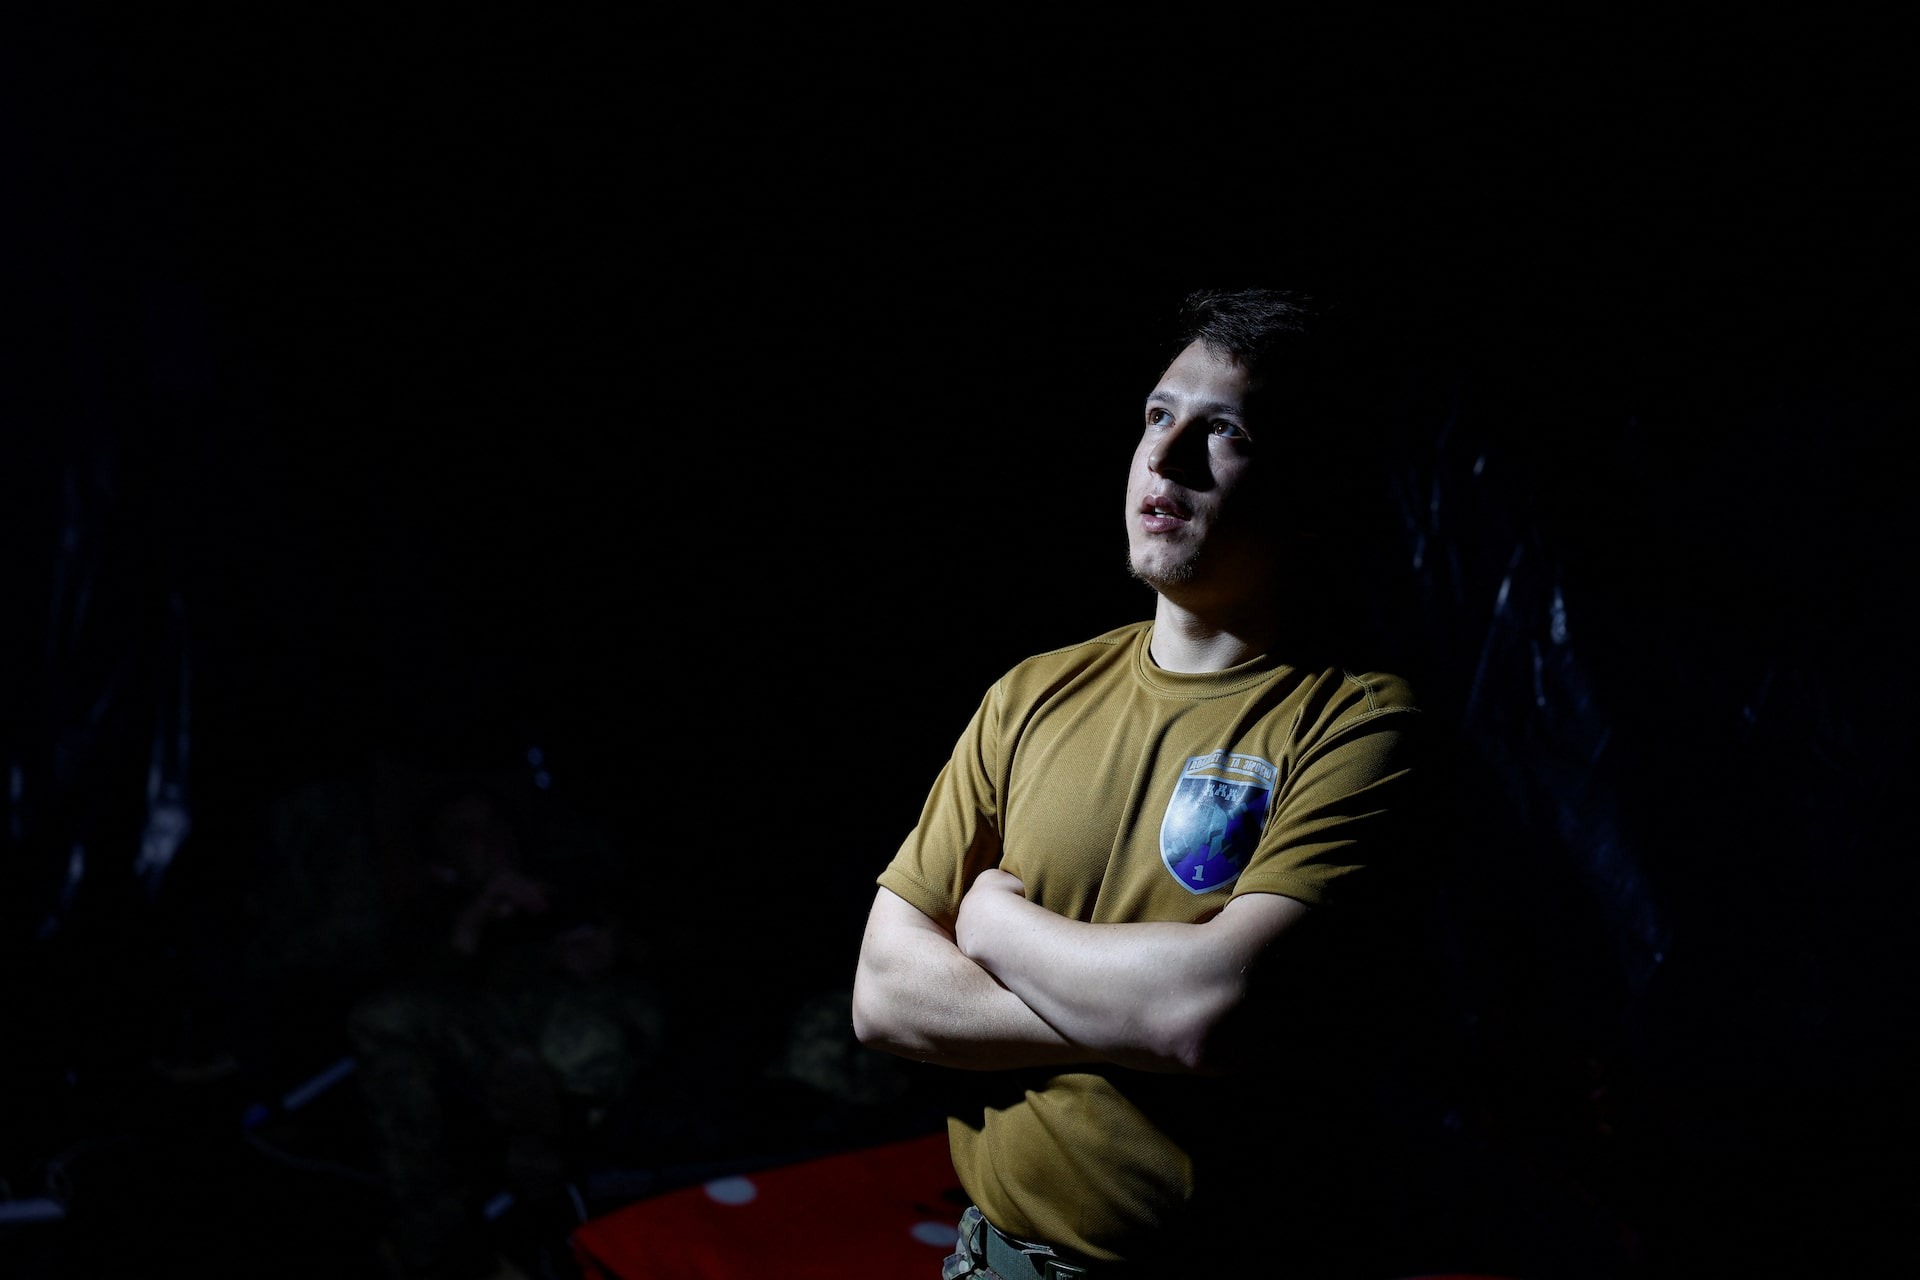 Ảnh binh sĩ Ukraine ở Kharkiv, nơi giao tranh ác liệt- Ảnh 19.